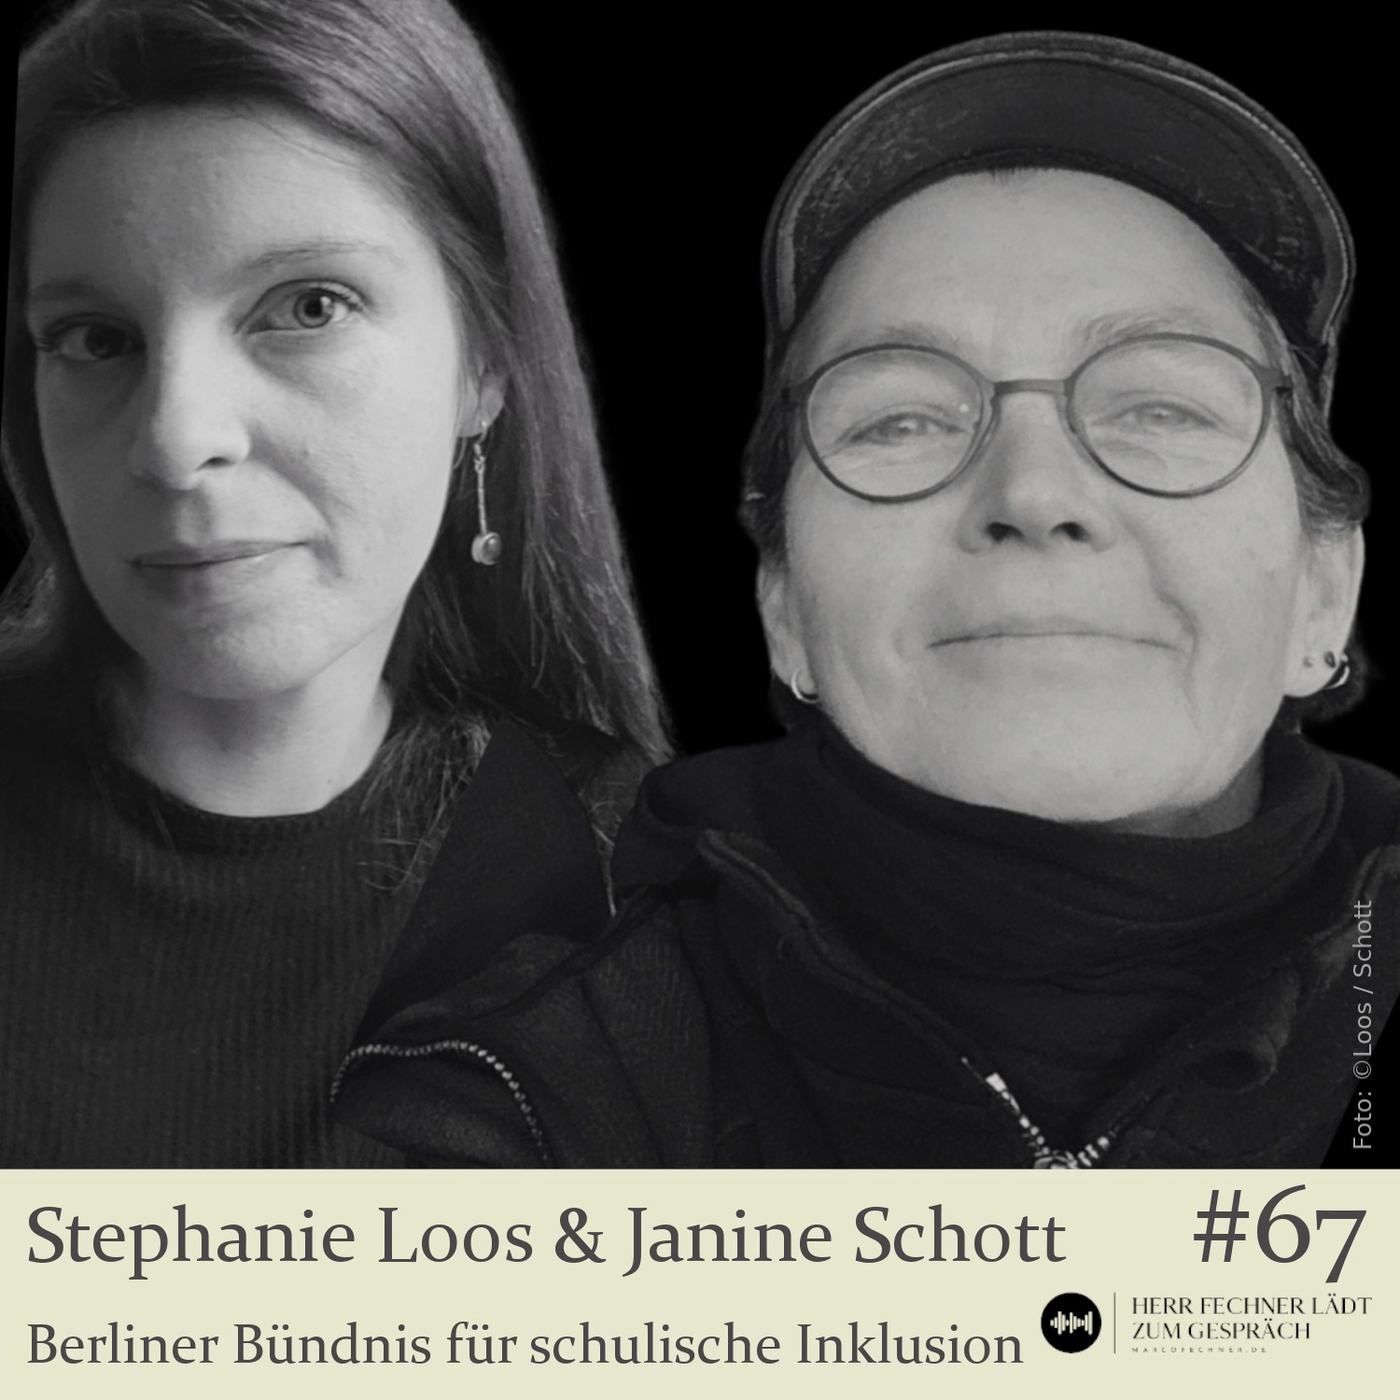 #67 Stephanie Loos & Janine Schott, Berliner Bündnis für schulische Inklusion